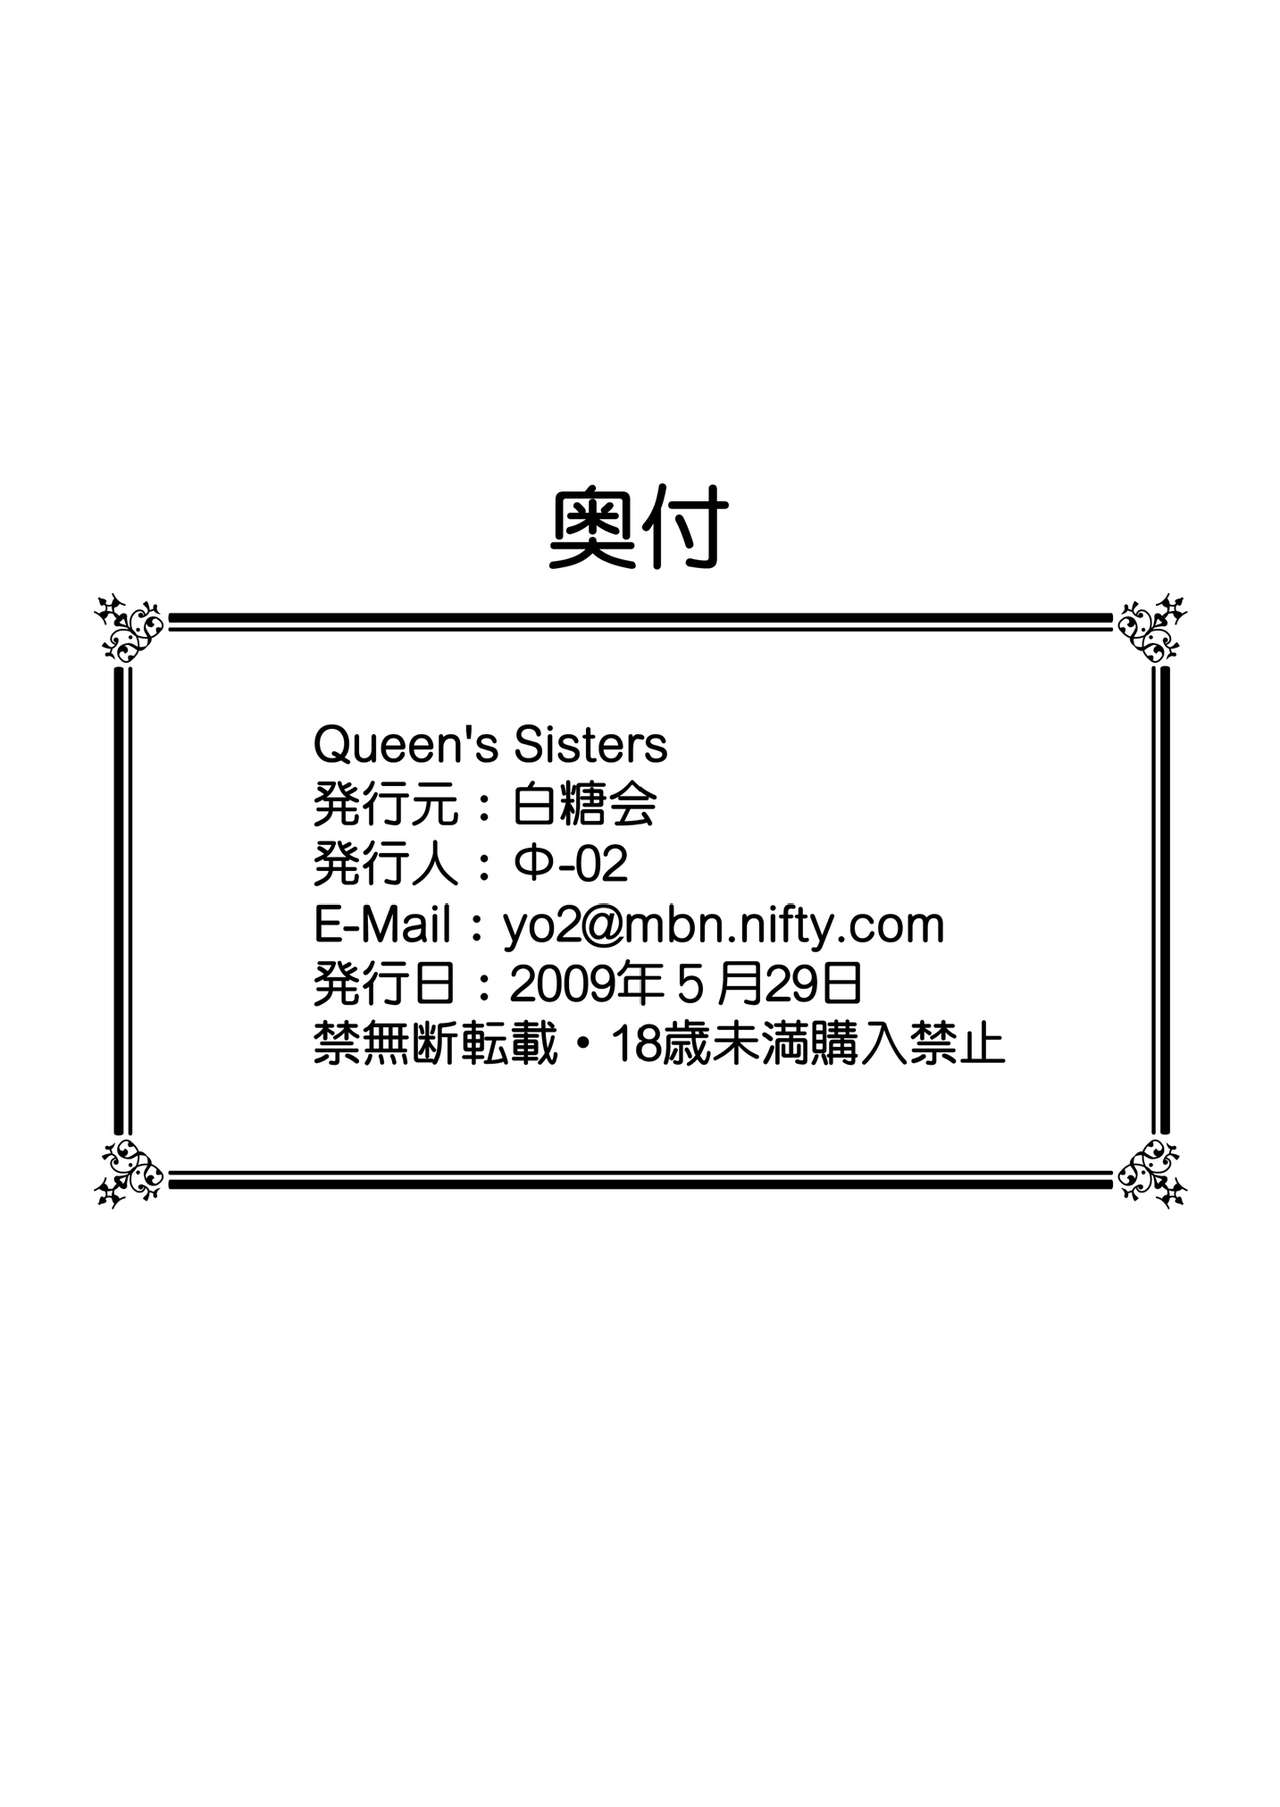 [Hakutoukai] Queen's Sisters (Queen's Blade) [白糖会] Queen's Sisters (クイーンズブレイド)